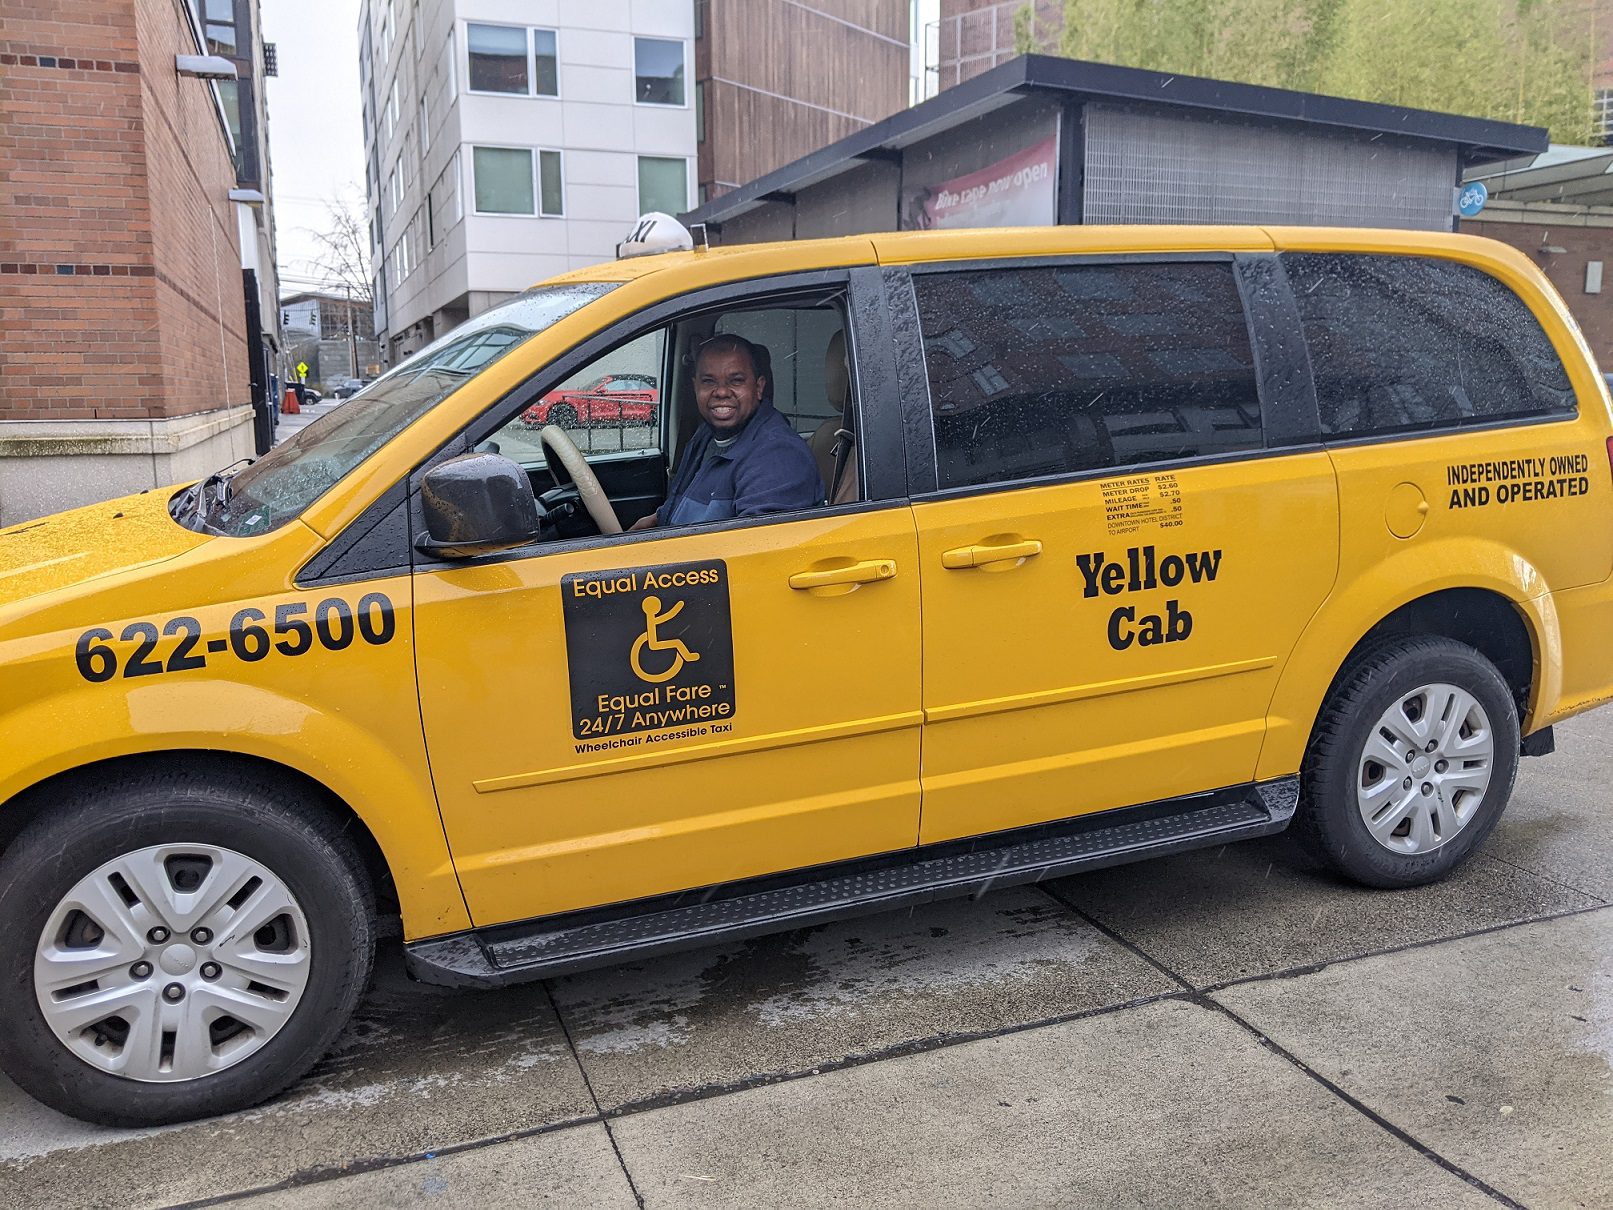 ሓደ ናይ የለው ካብ (Yellow Cab) ገናሒ መኪና ንሓደ ተሳታፊ መደብ ፈተነ ሕጂ ተጎዓዝ (Ride Now) ንምስቃል ኣብ ምድላው እንከሎ ስእሊ፡ ክፍሊ መጉዓዝያ ሲያትል (SDOT)